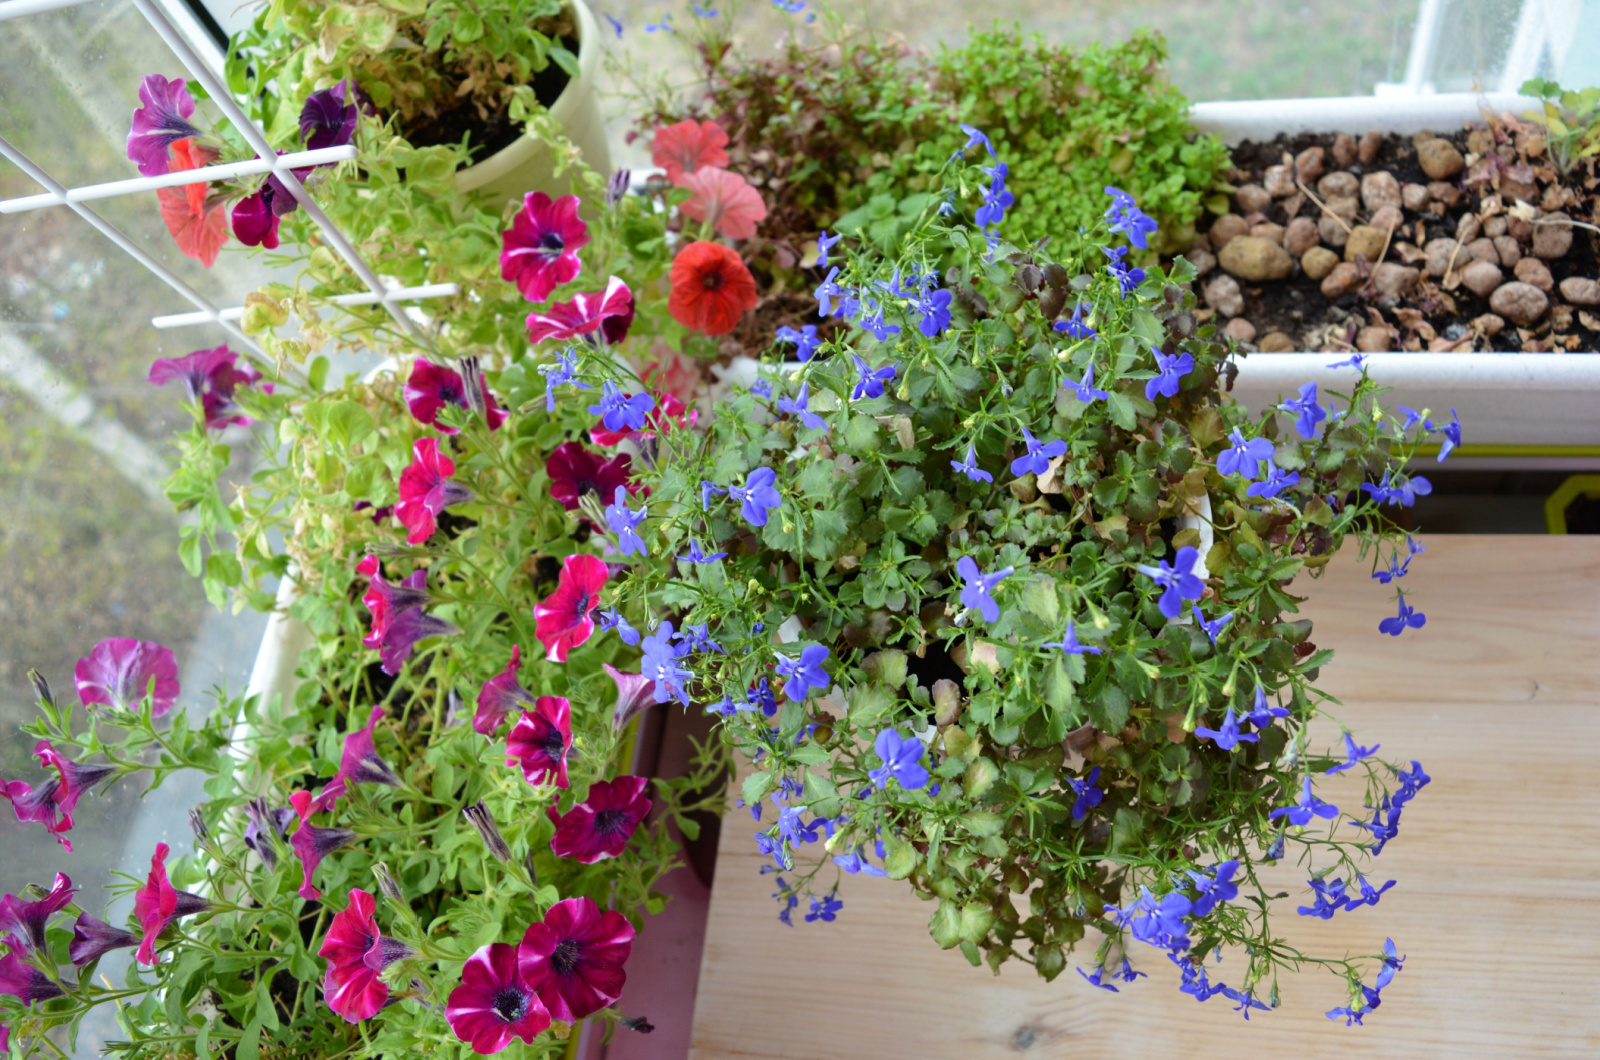 blue lobelia flowers and pink petunias